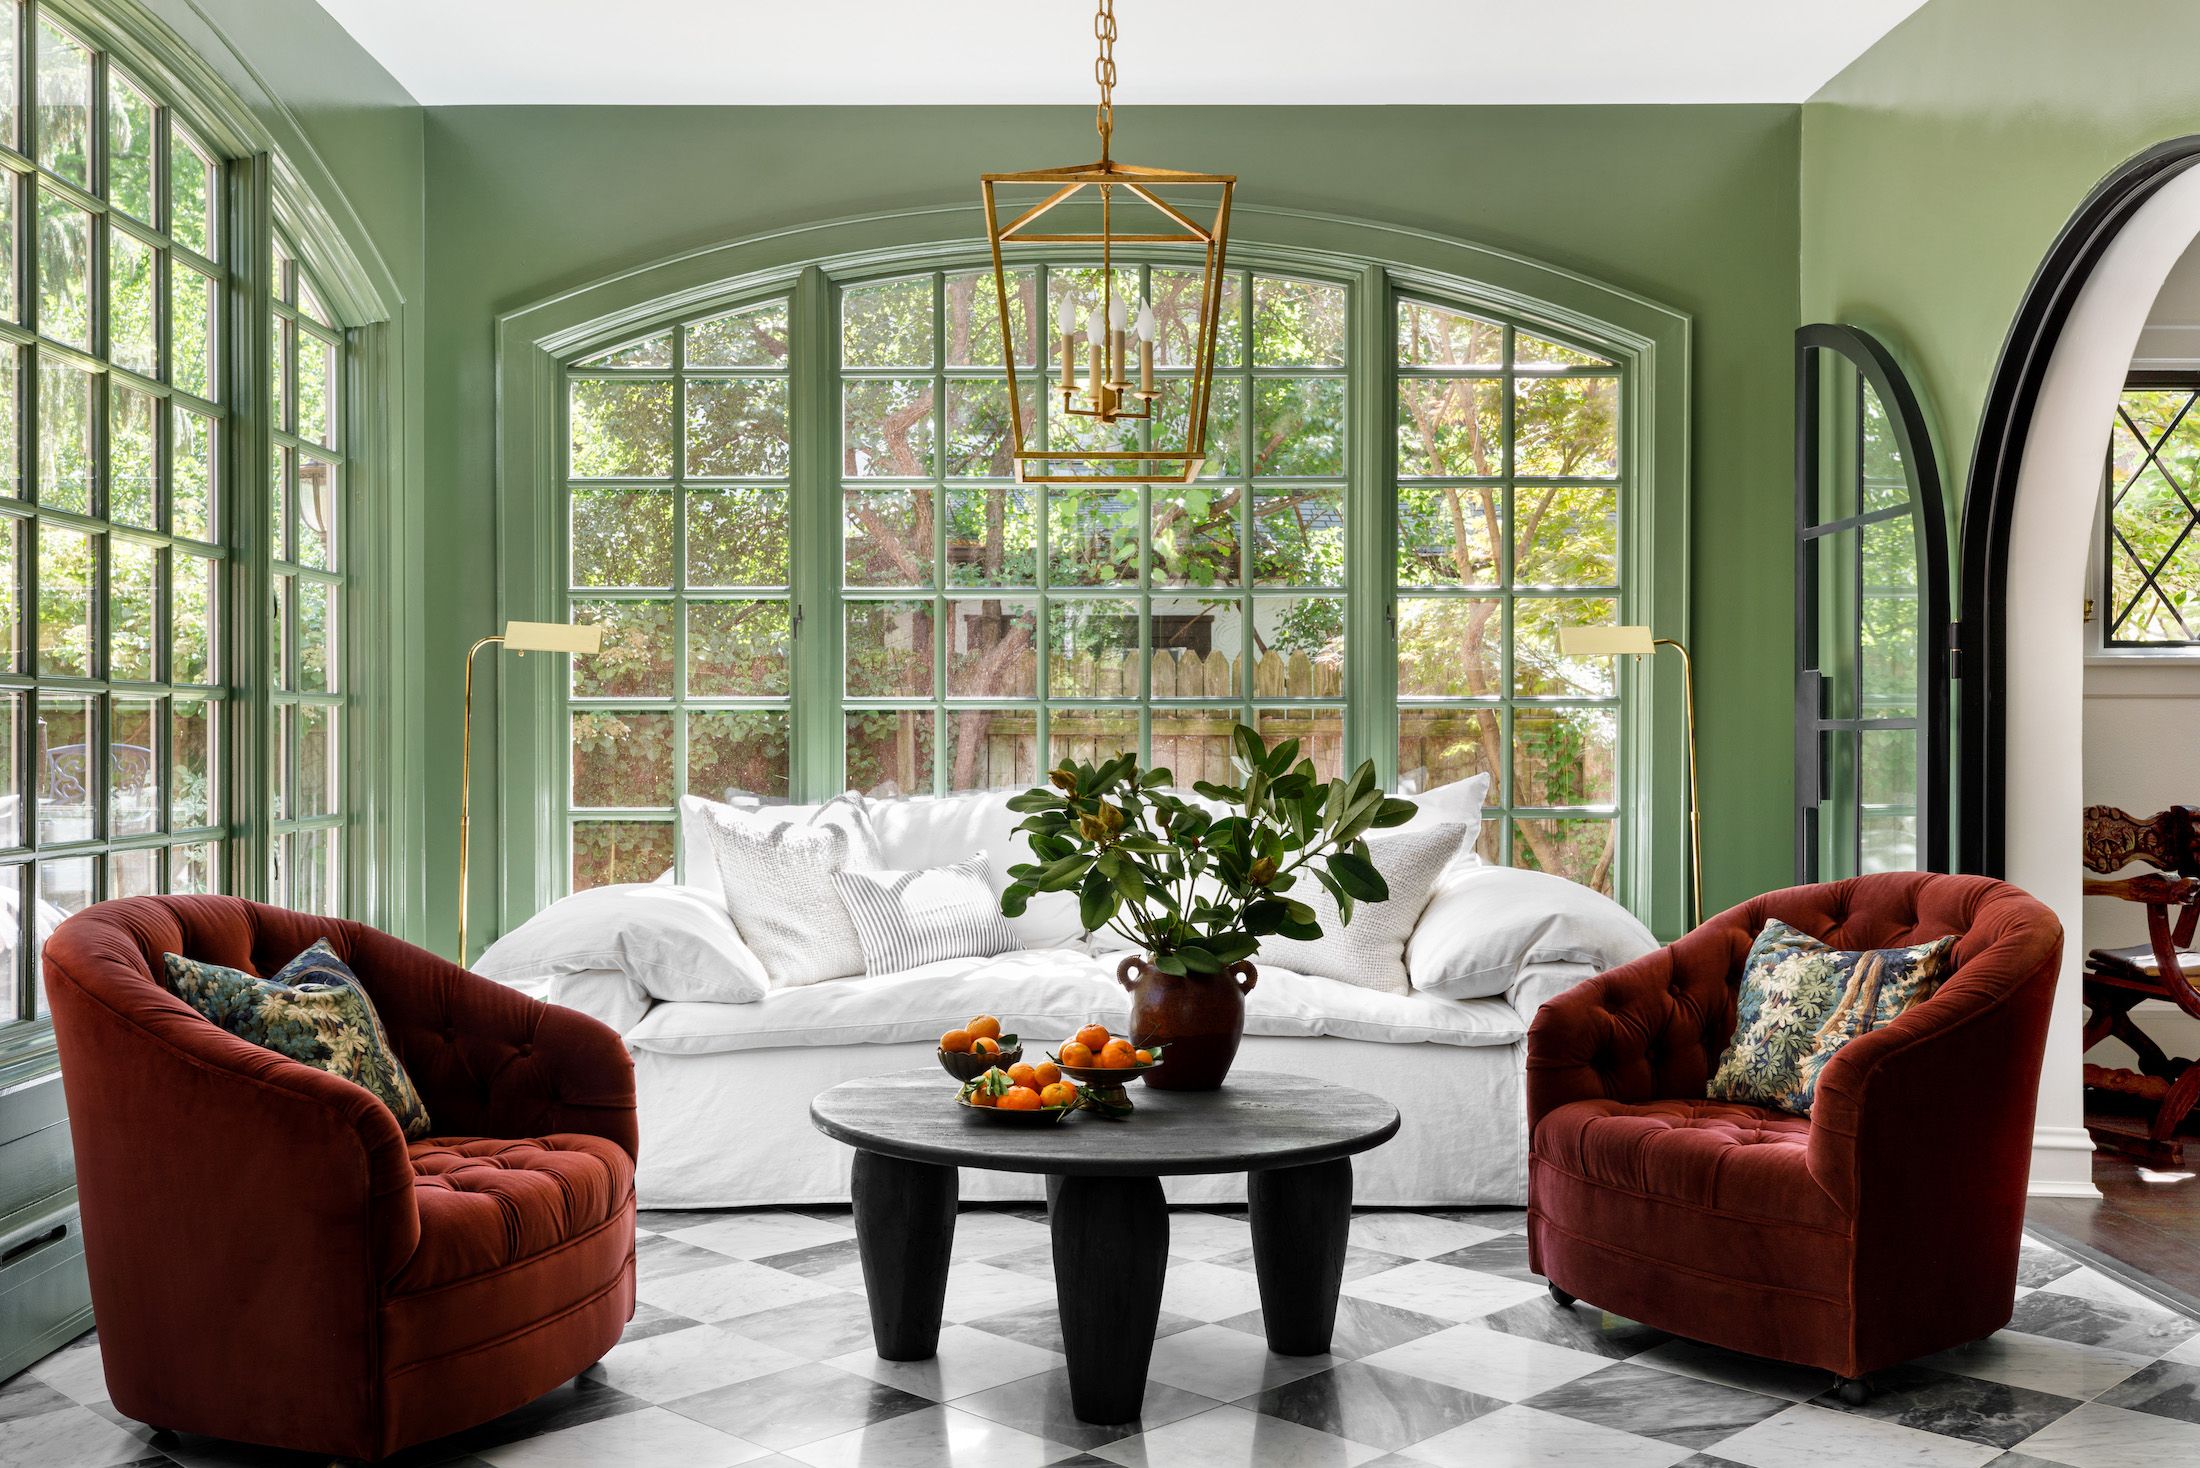 700 Living room ideas | house interior, house design, living room designs